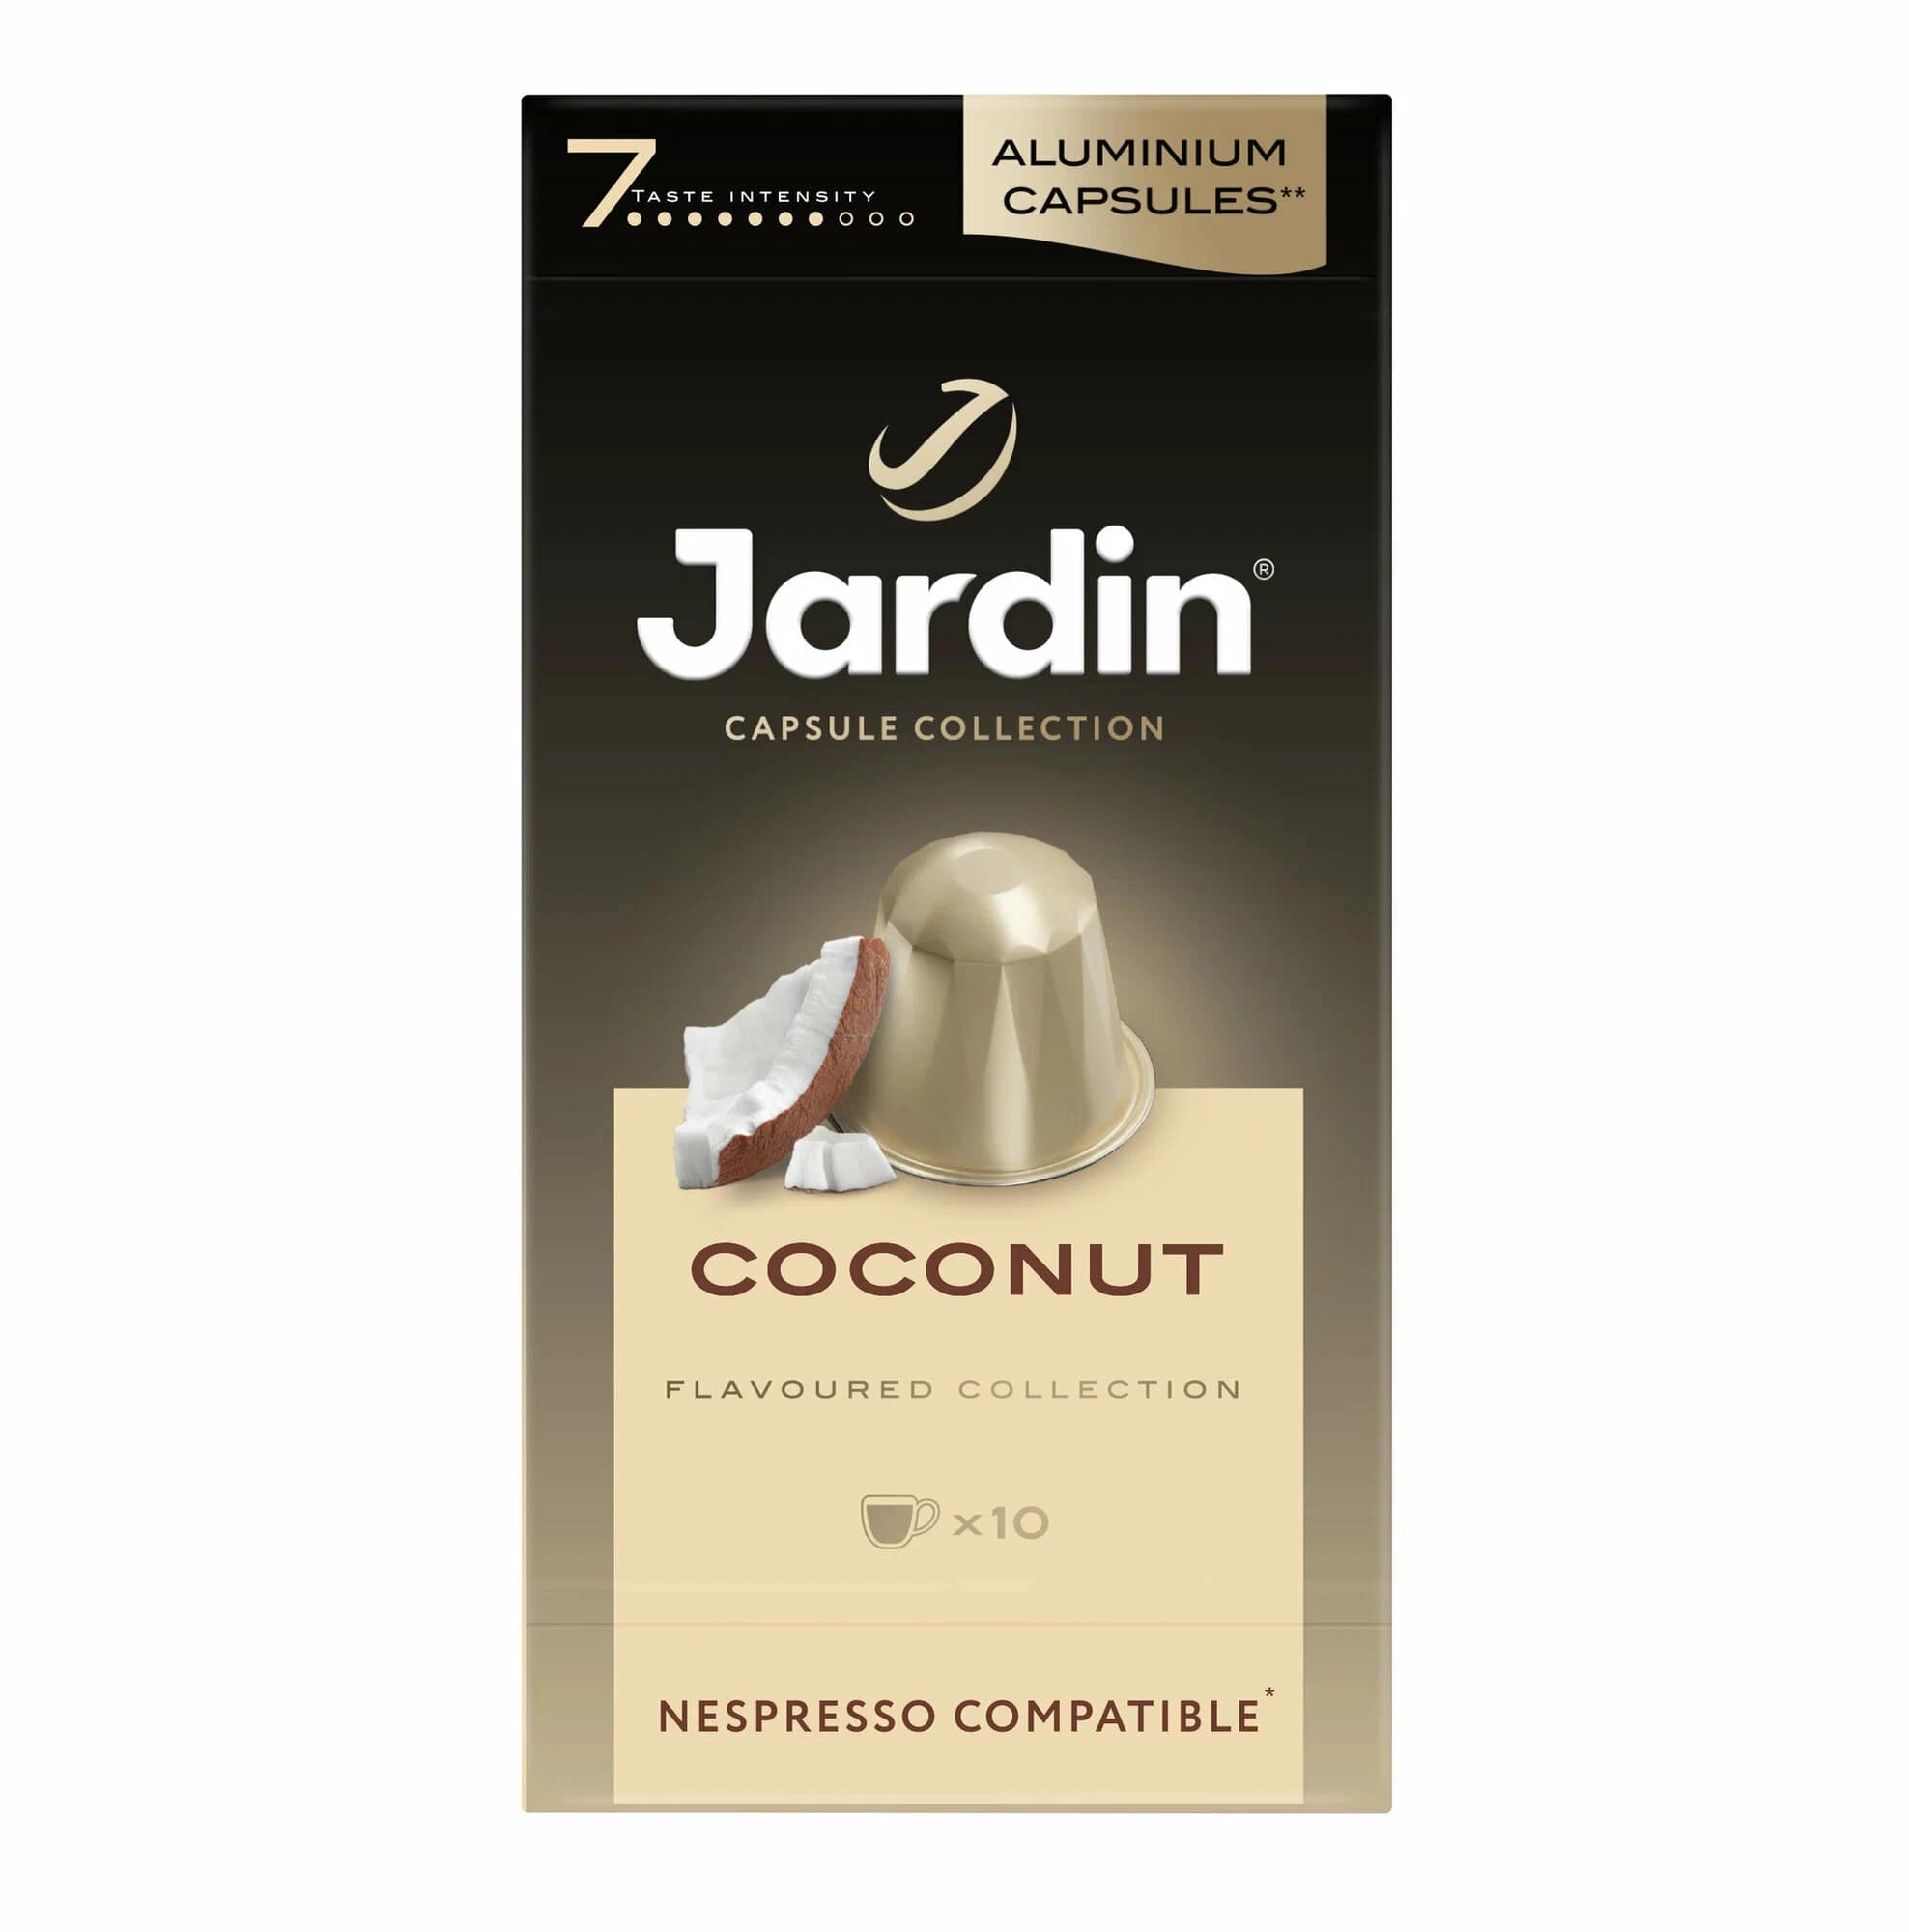 Jardin капсулы Coconut (5грх10к) кофе мол.жар.в капс.прем/с.